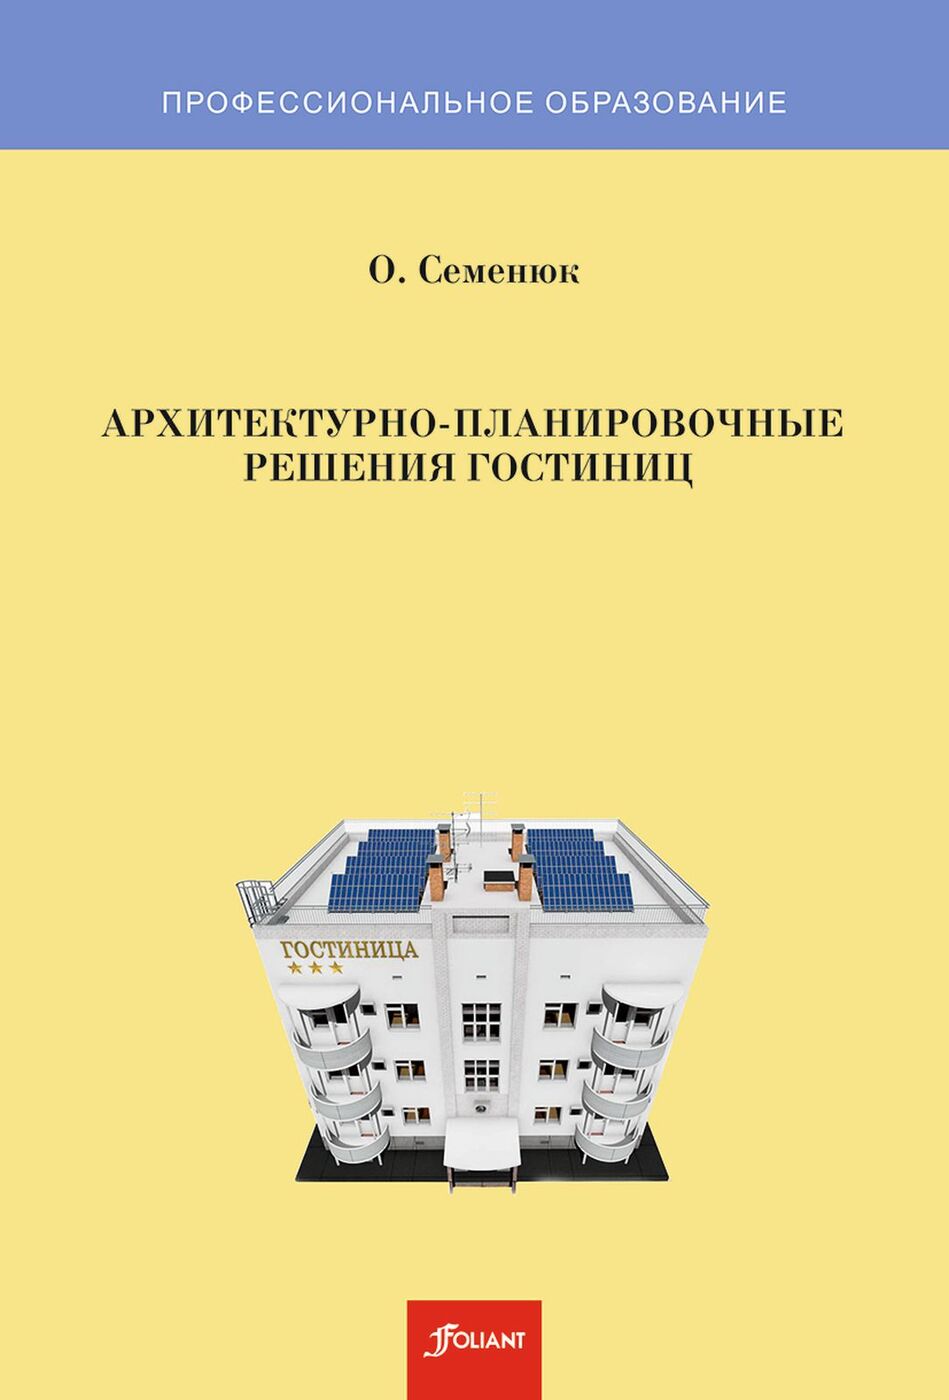 Архитектурно-планировочные решения гостиниц. 3-е изд., доп. Учебник. 